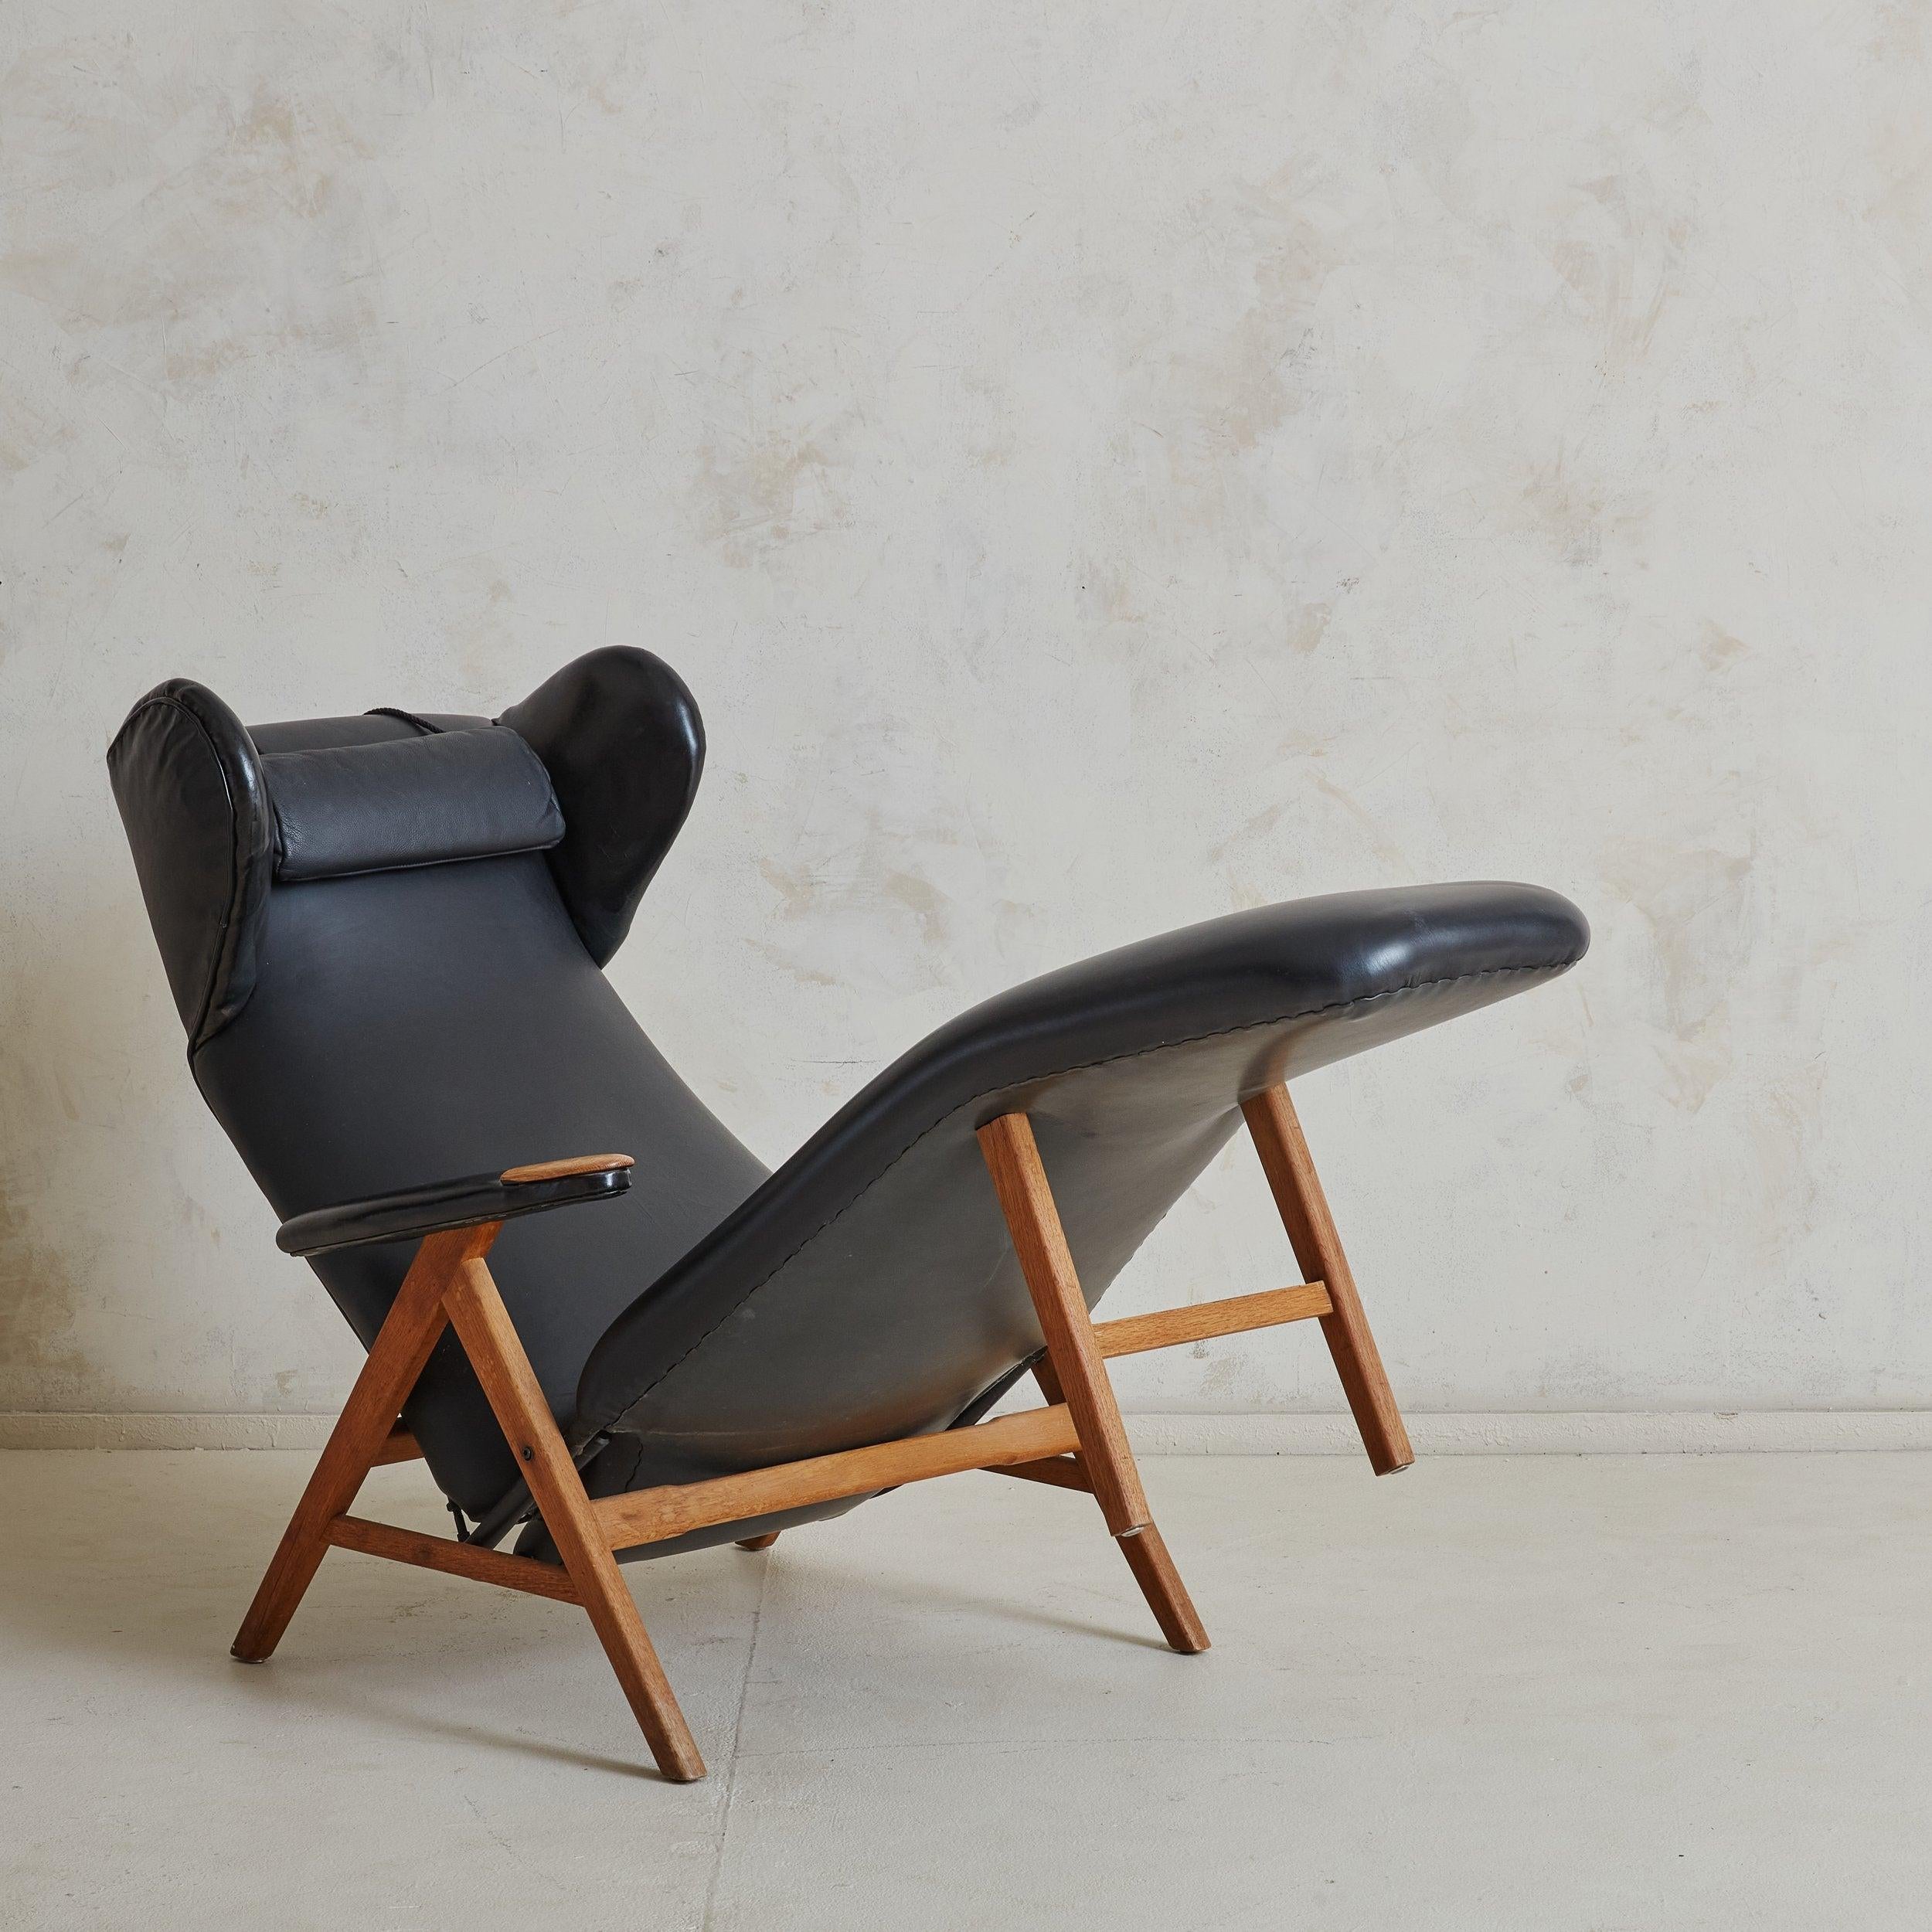 Der Danish Modern Lounge Chair verfügt über ein V-förmiges Gestell aus Honigeiche, eine originale schwarze Lederpolsterung, gepolsterte Vinylarmlehnen und ein abnehmbares Nackenkissen für zusätzlichen Komfort. Übertriebene 